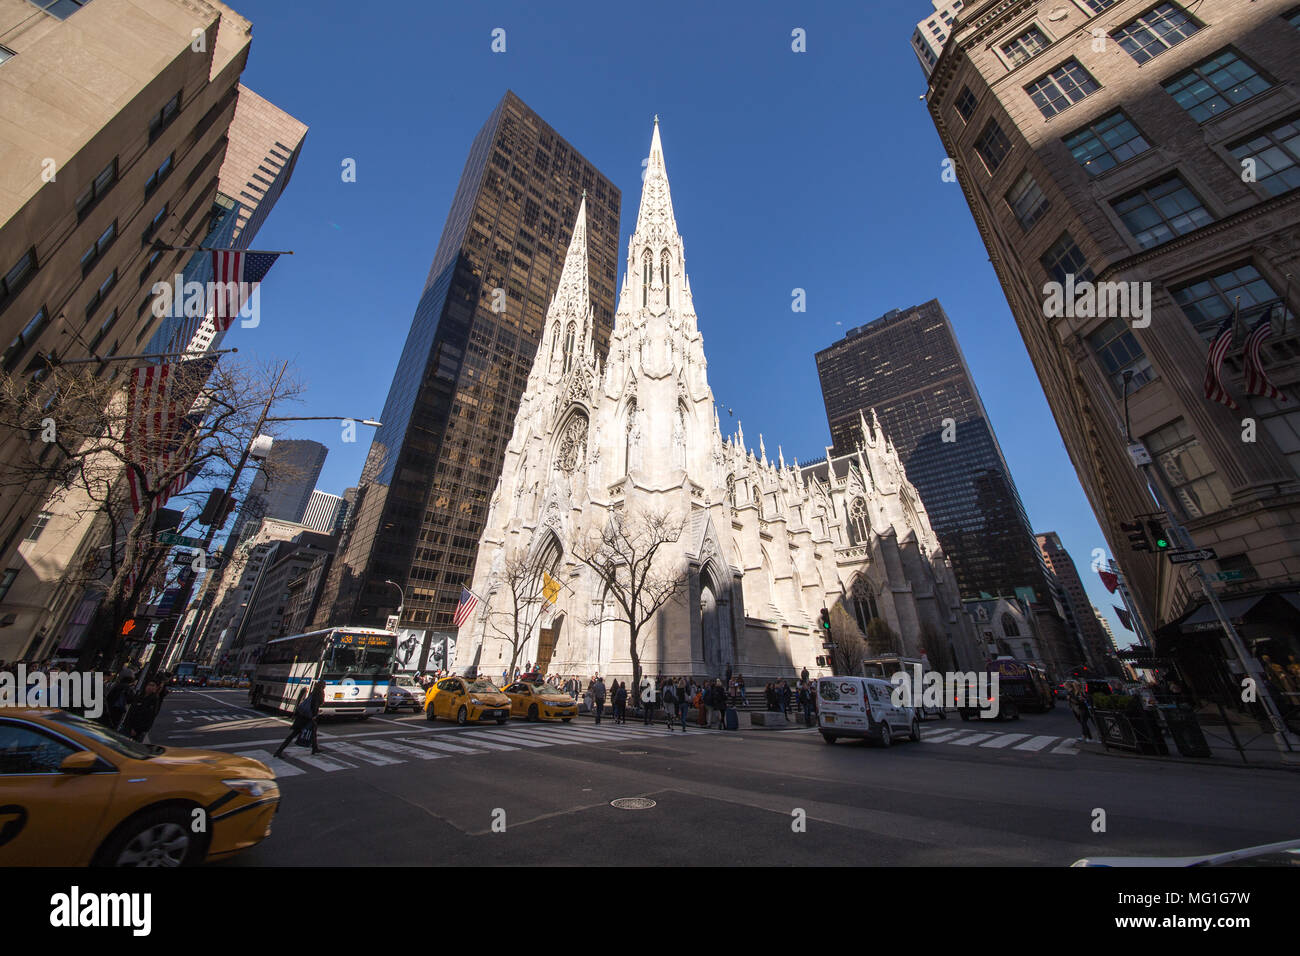 St. Patrick's Cathedral, New York, NY Stock Photo